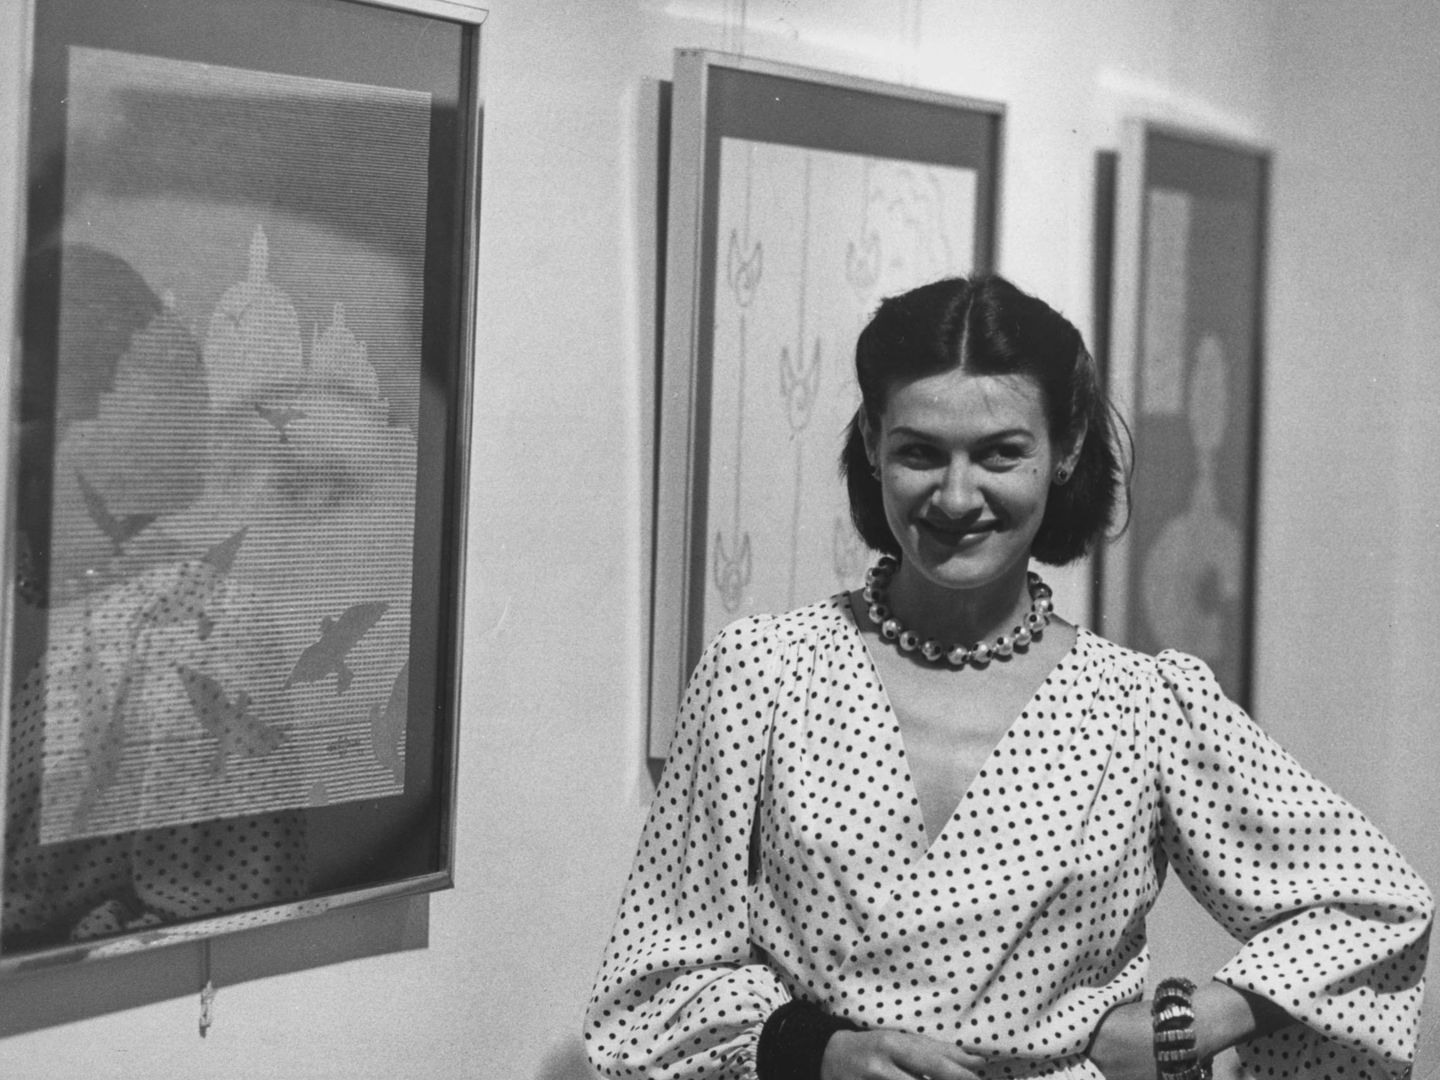 Paloma Picasso, hija del artista, posando junto a la obra de su padre en Barcelona.  (Hulton Archive/Getty)